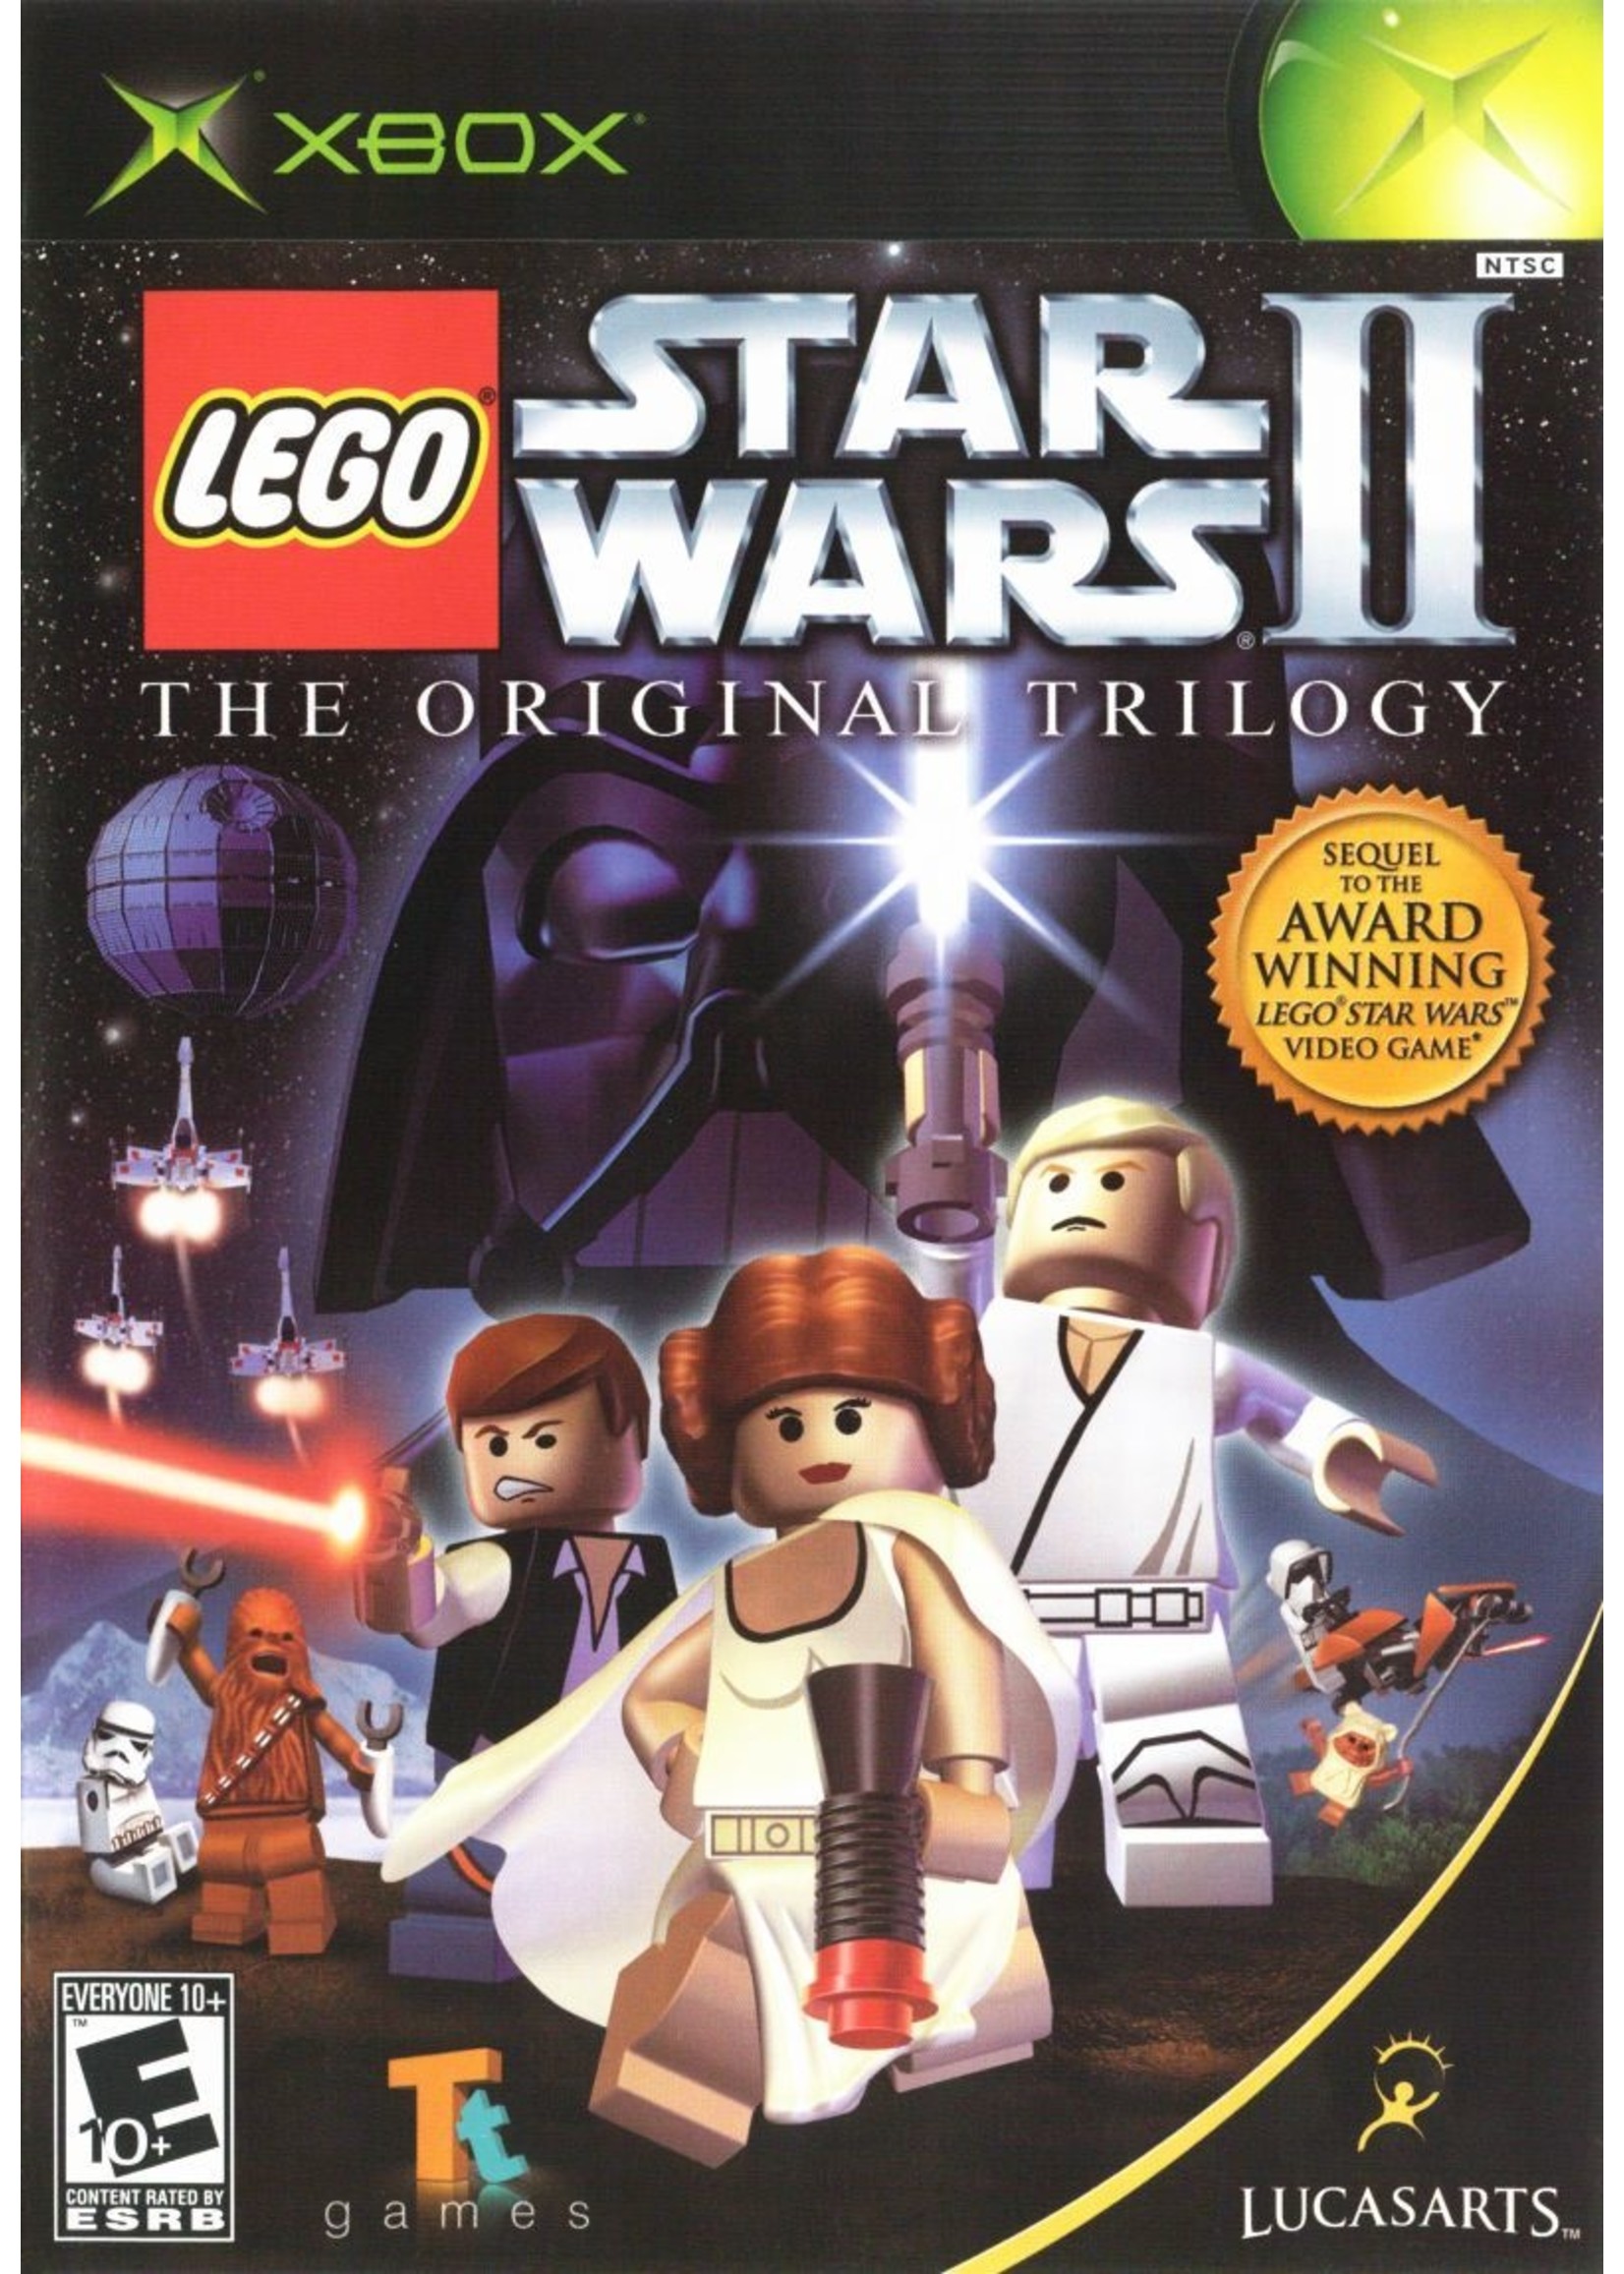 Microsoft Xbox LEGO Star Wars II Original Trilogy